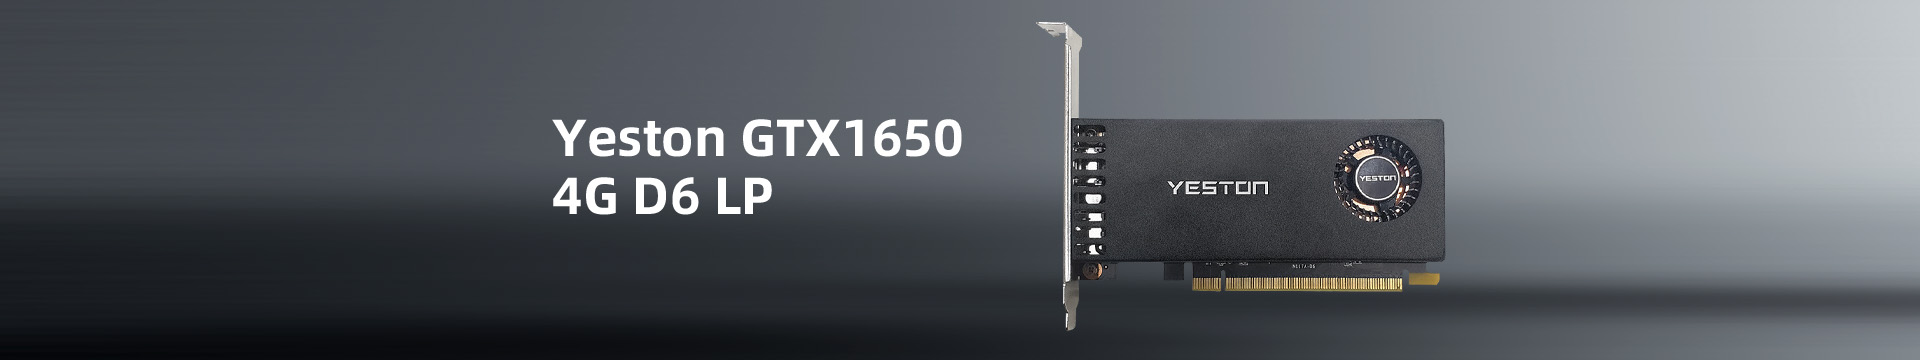 GTX1650-4G D6 LP